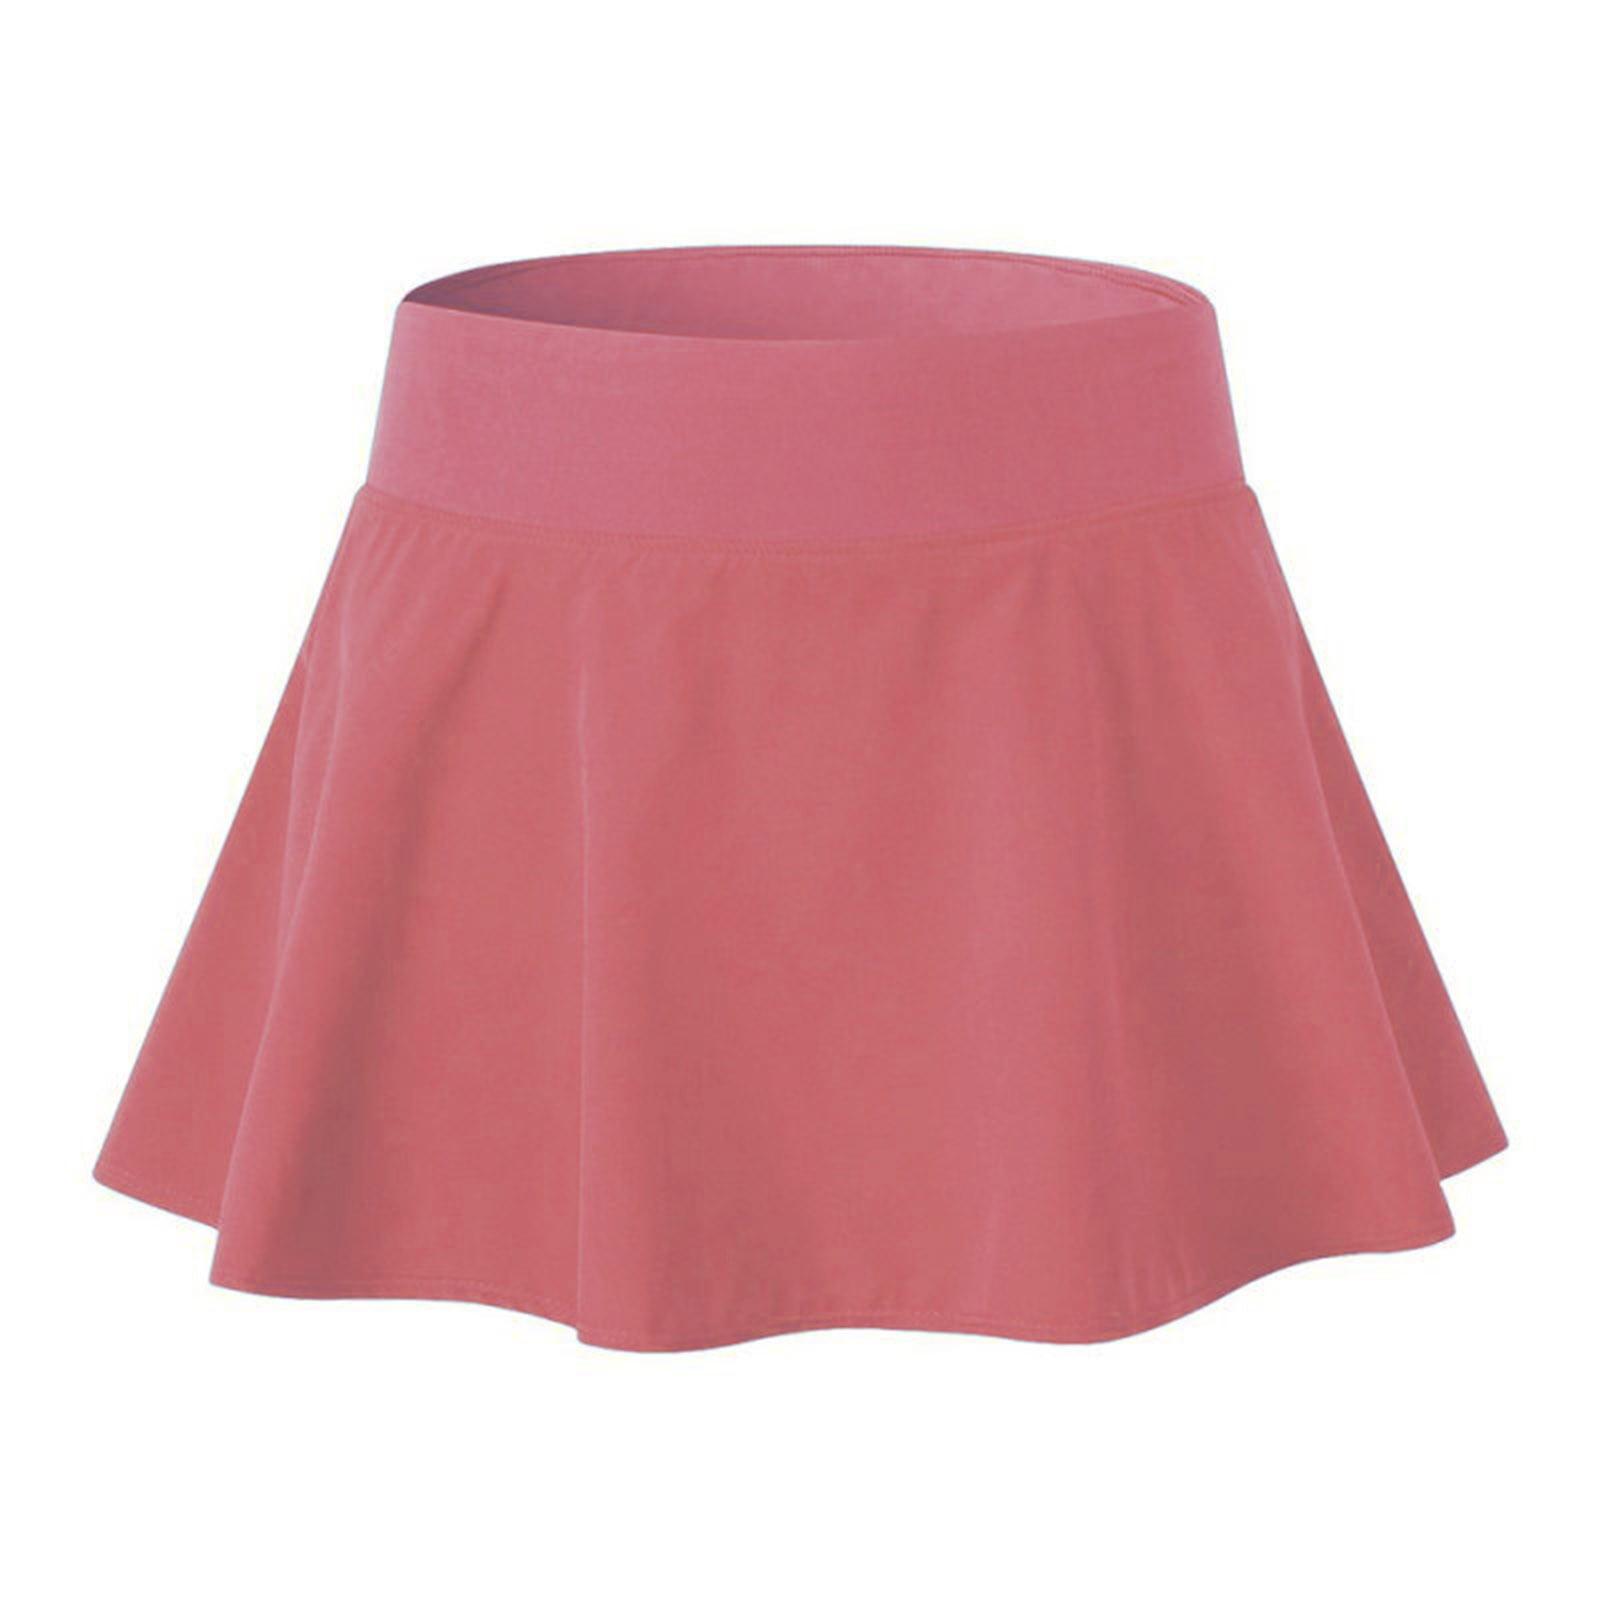 HSMQHJWE Lace Up Skirt 50S Poodle Skirt For Women Running Women Skrit ...